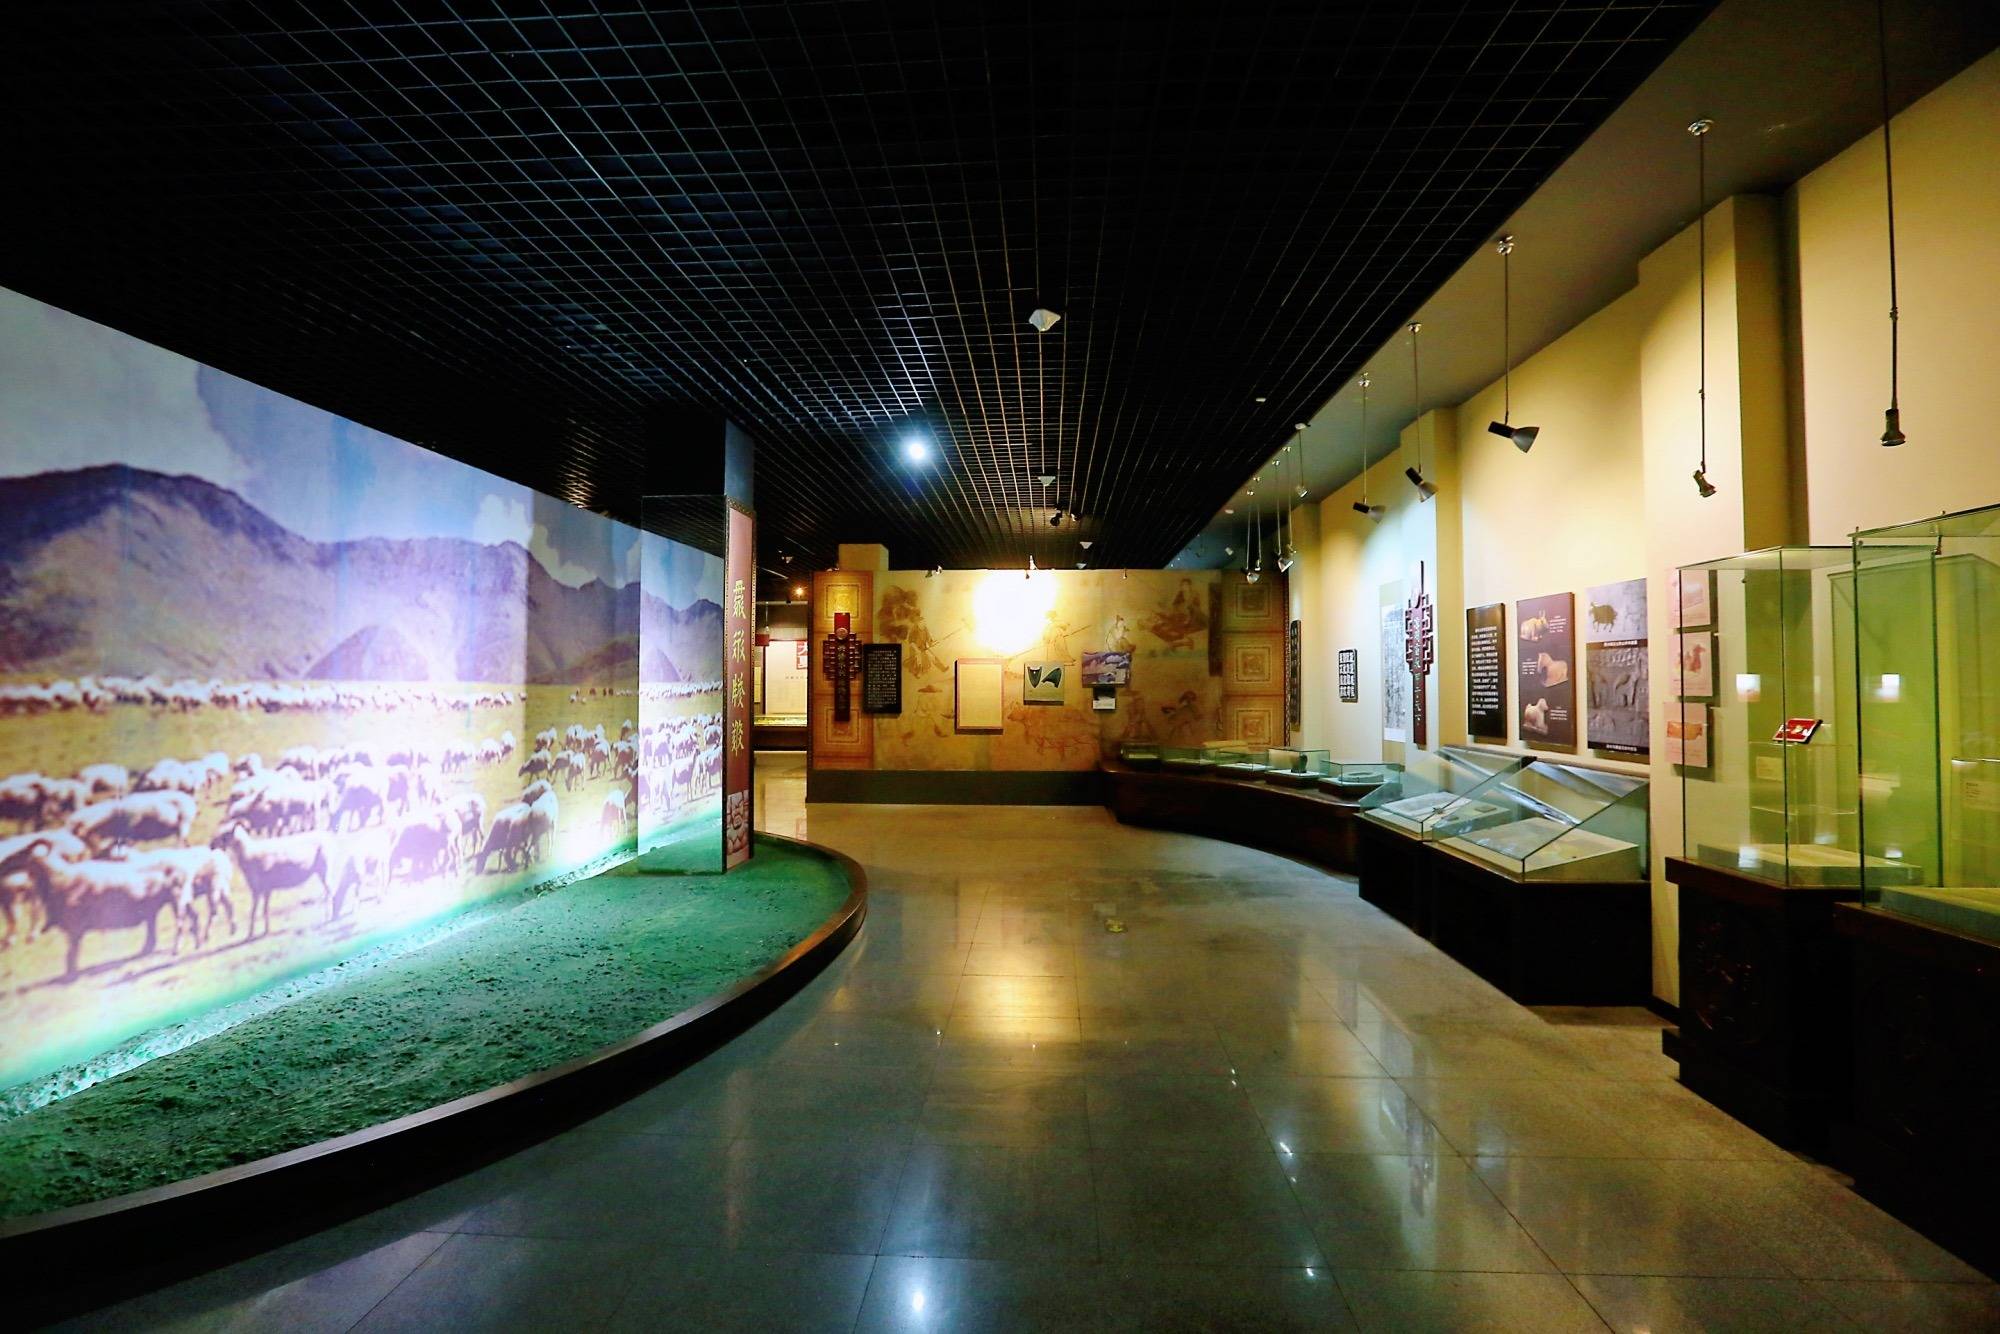 武威西夏博物馆,探寻西夏文明,触摸历史文化,看神秘的镇馆之宝